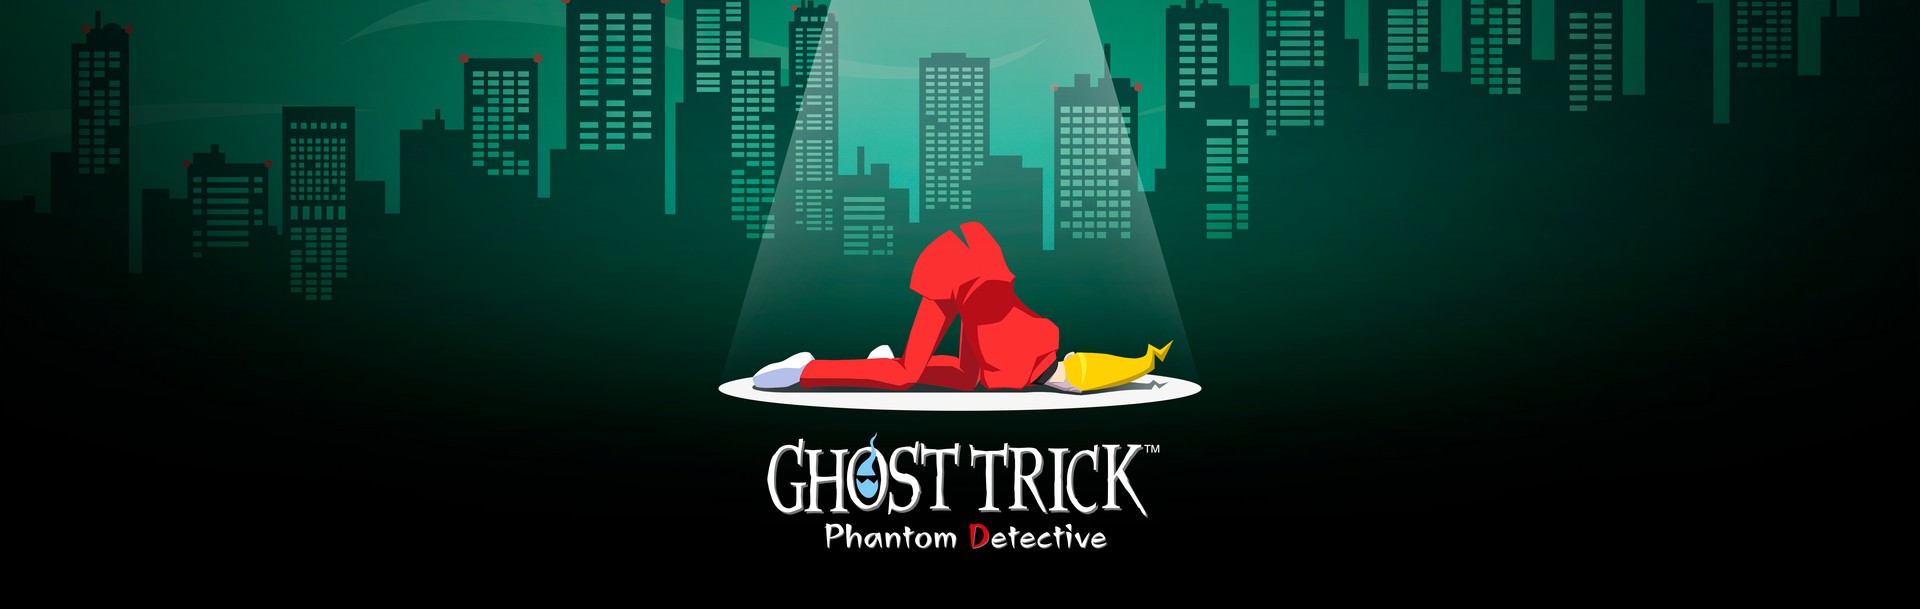 Ghost Trick™: Phantom-Detektiv ist ab sofort erhältlich